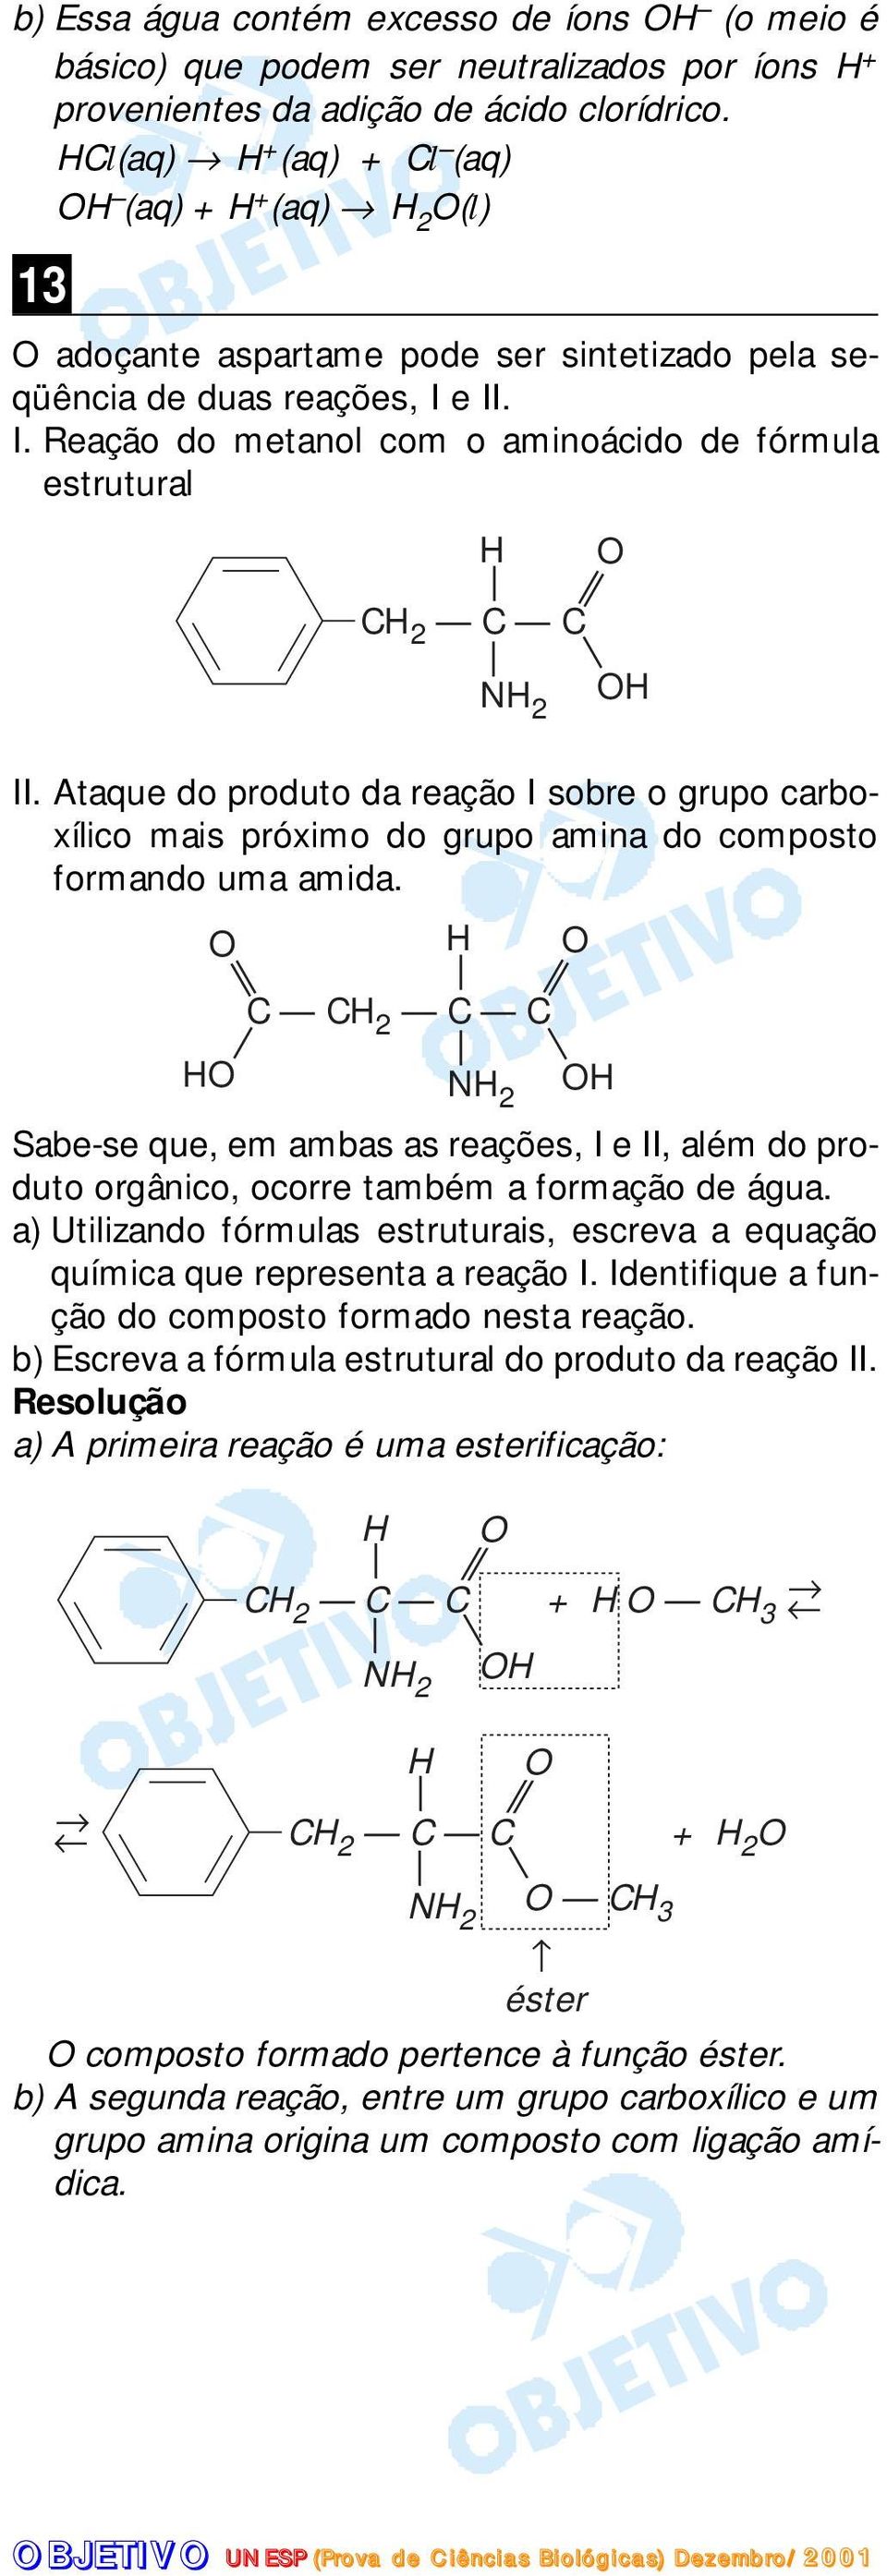 Ataque do produto da reação I sobre o grupo carboxílico mais próximo do grupo amina do composto formando uma amida.